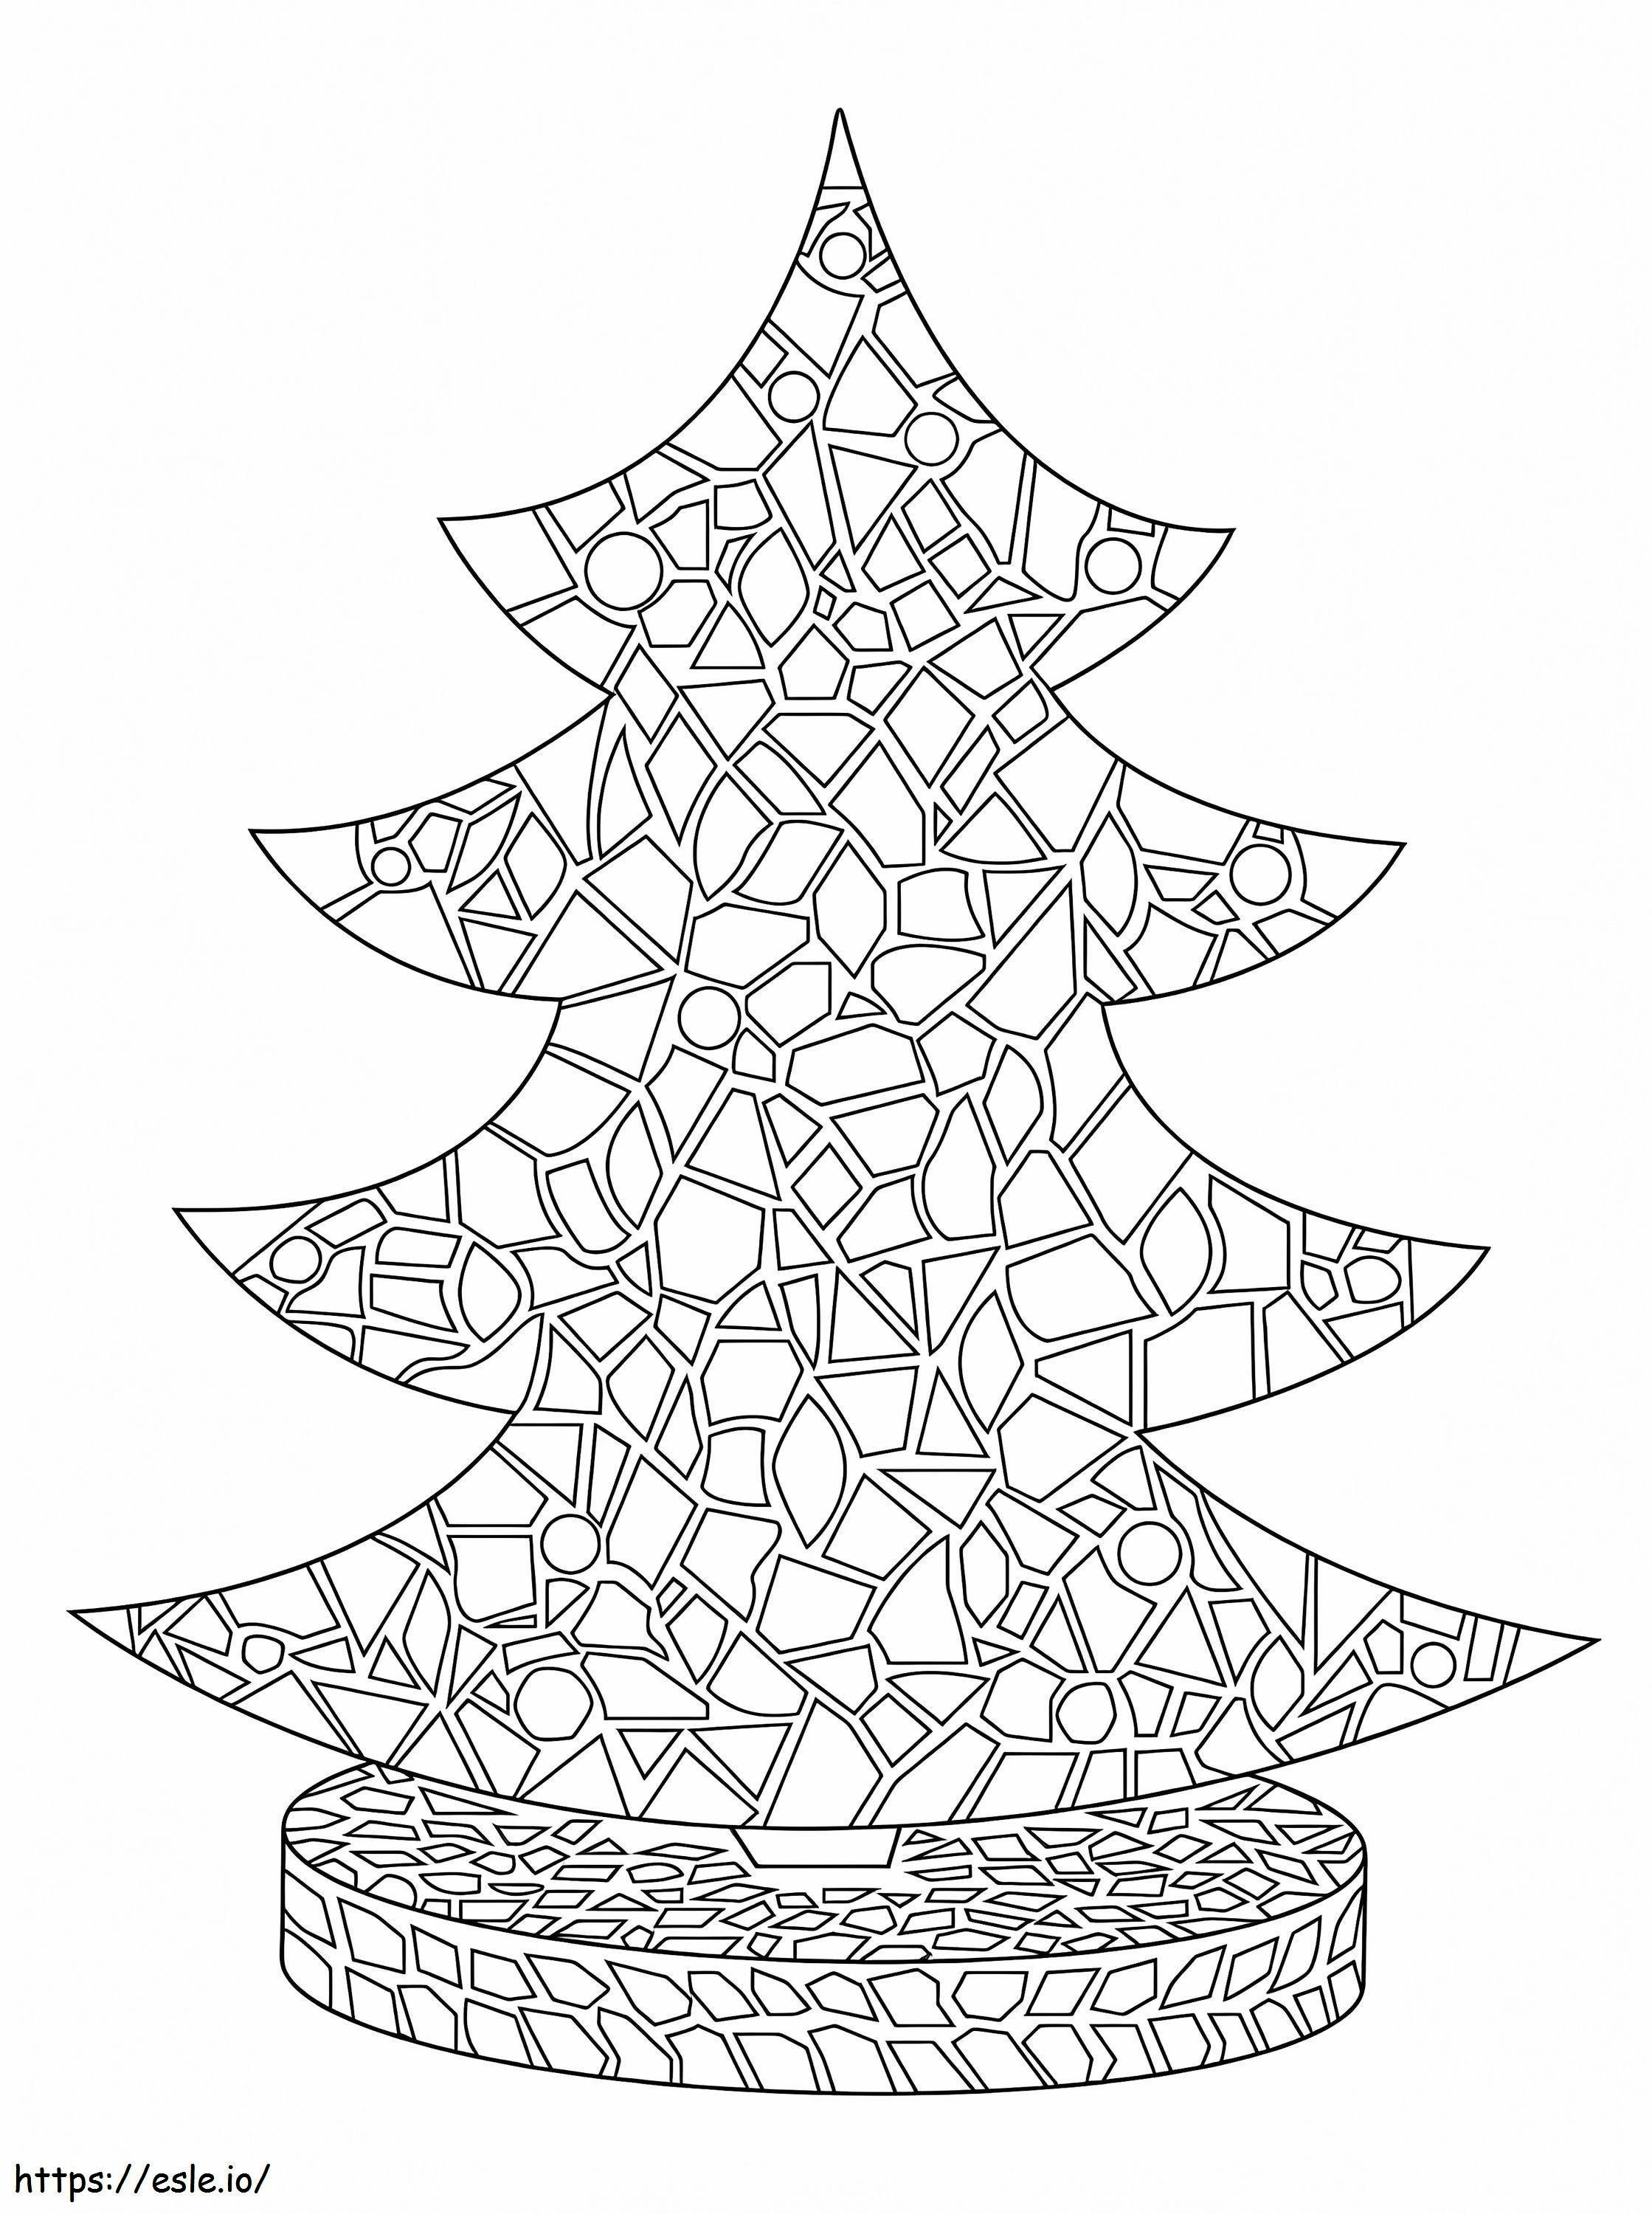 Mosaico del árbol de Navidad para colorear